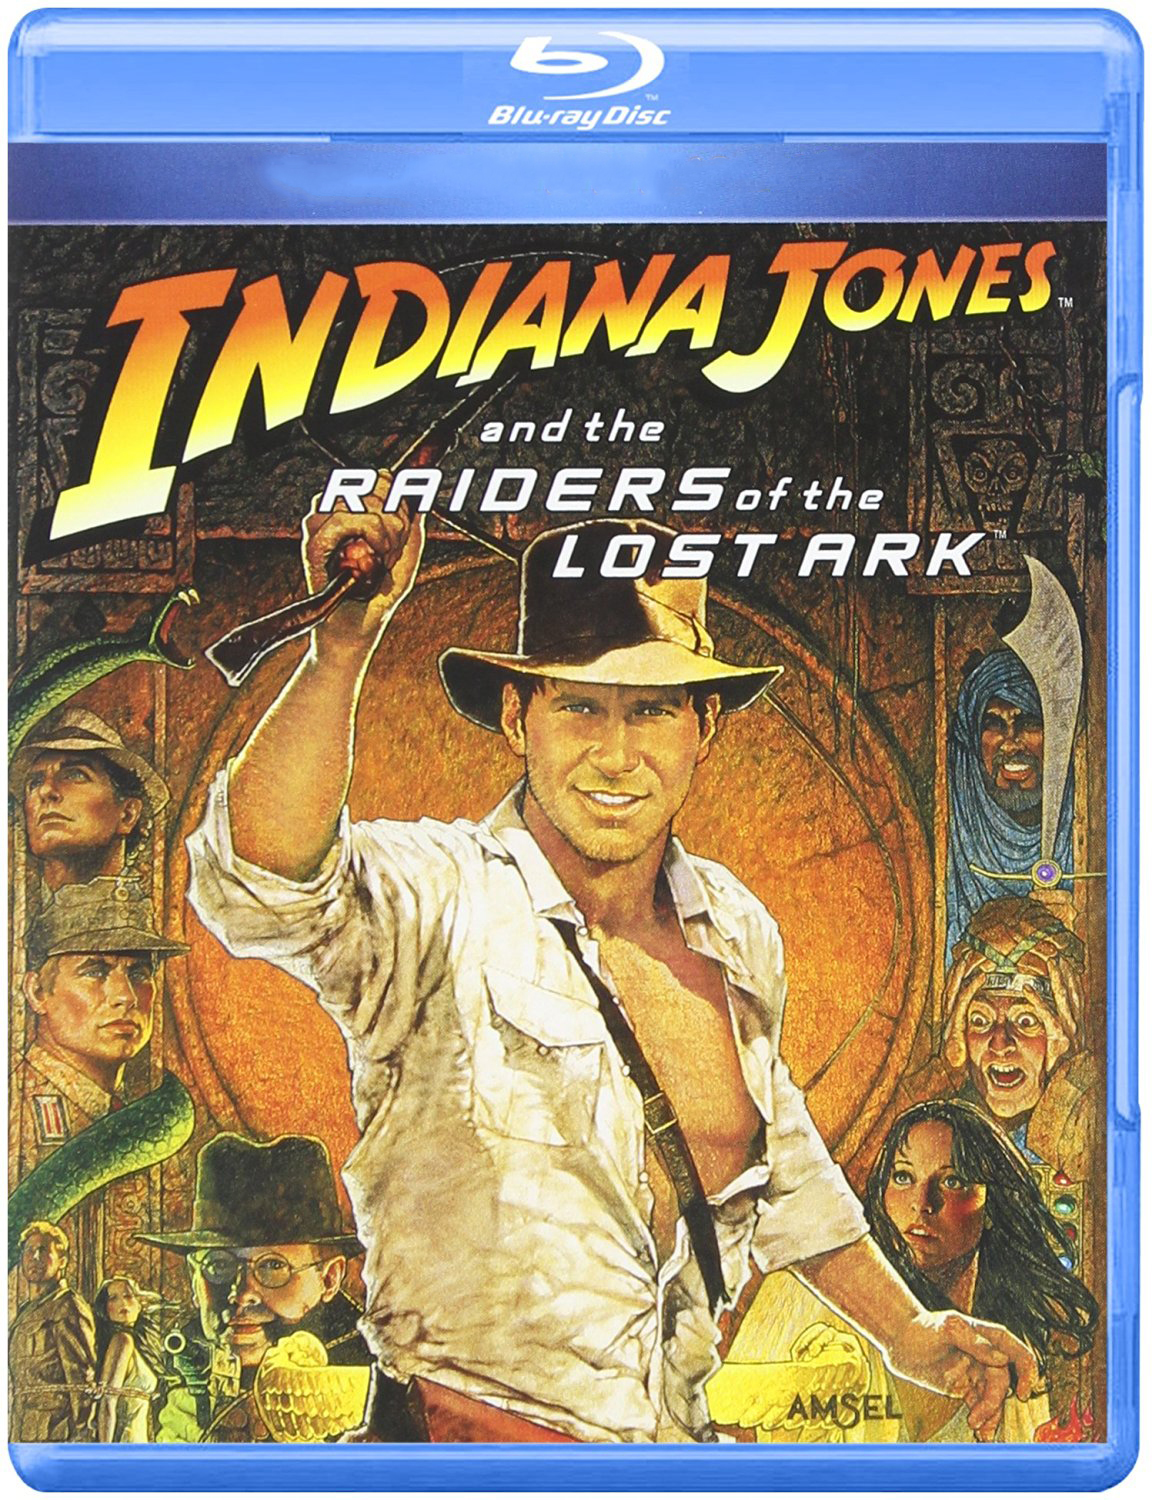 Indiana Jones: Raiders